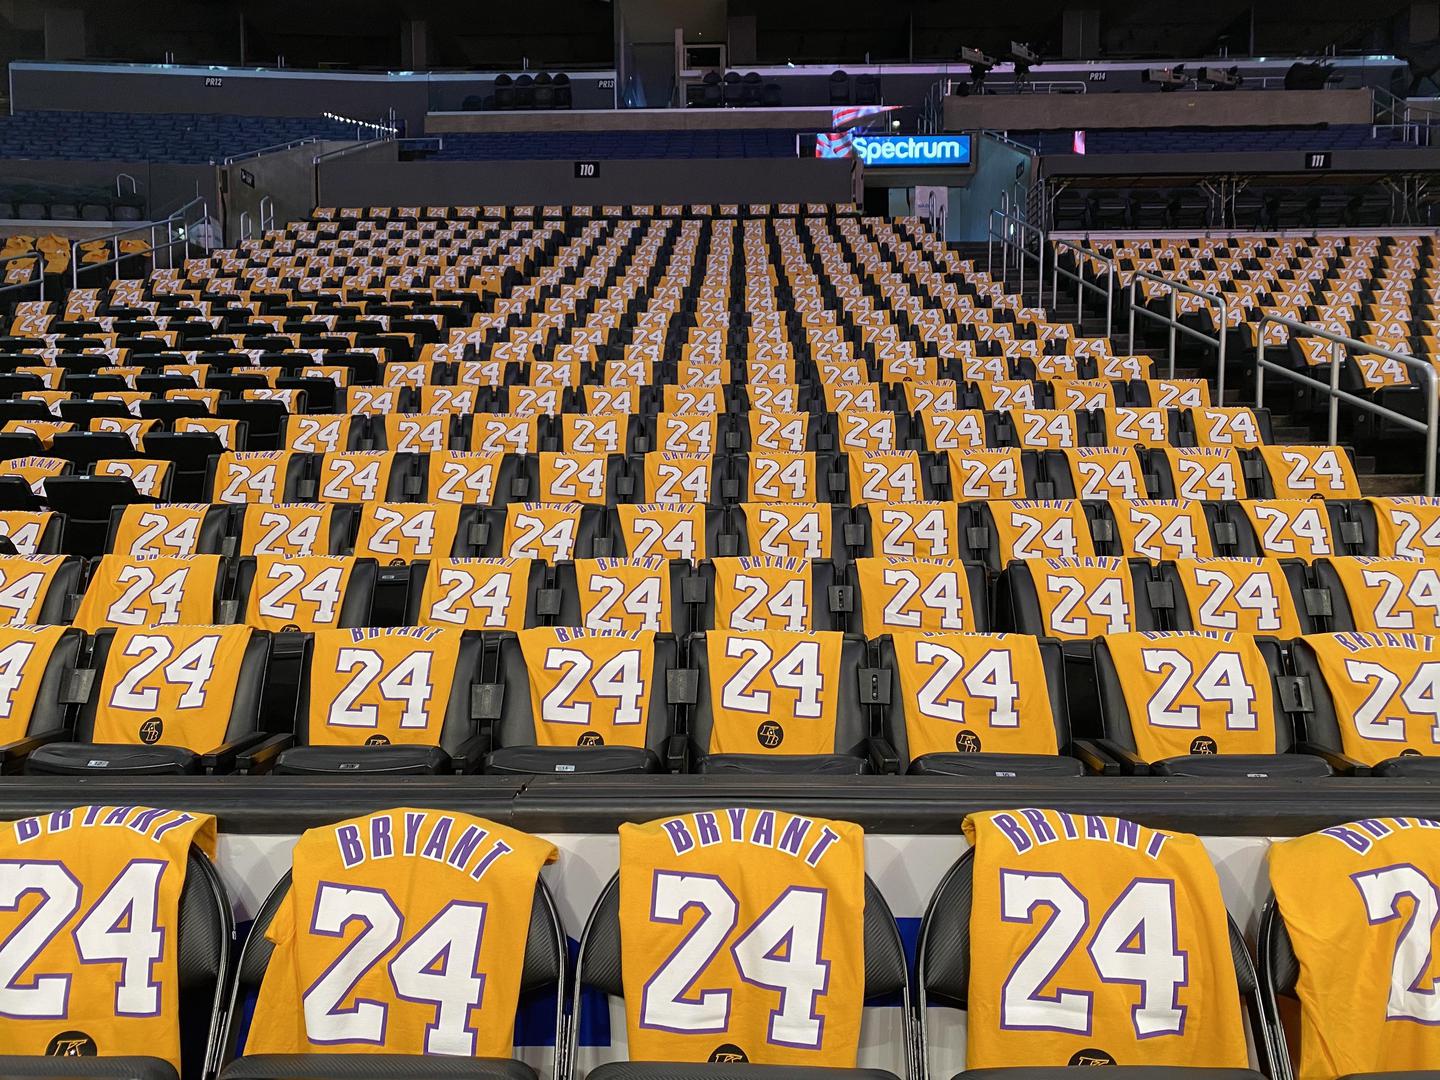 Više od 20.000 ljudi u dvorani opet će oživjeti Kobea i njegove legendarne brojeve 24 i 8. Naime, svatko će dobiti majicu s njegovim prezimenom i brojem